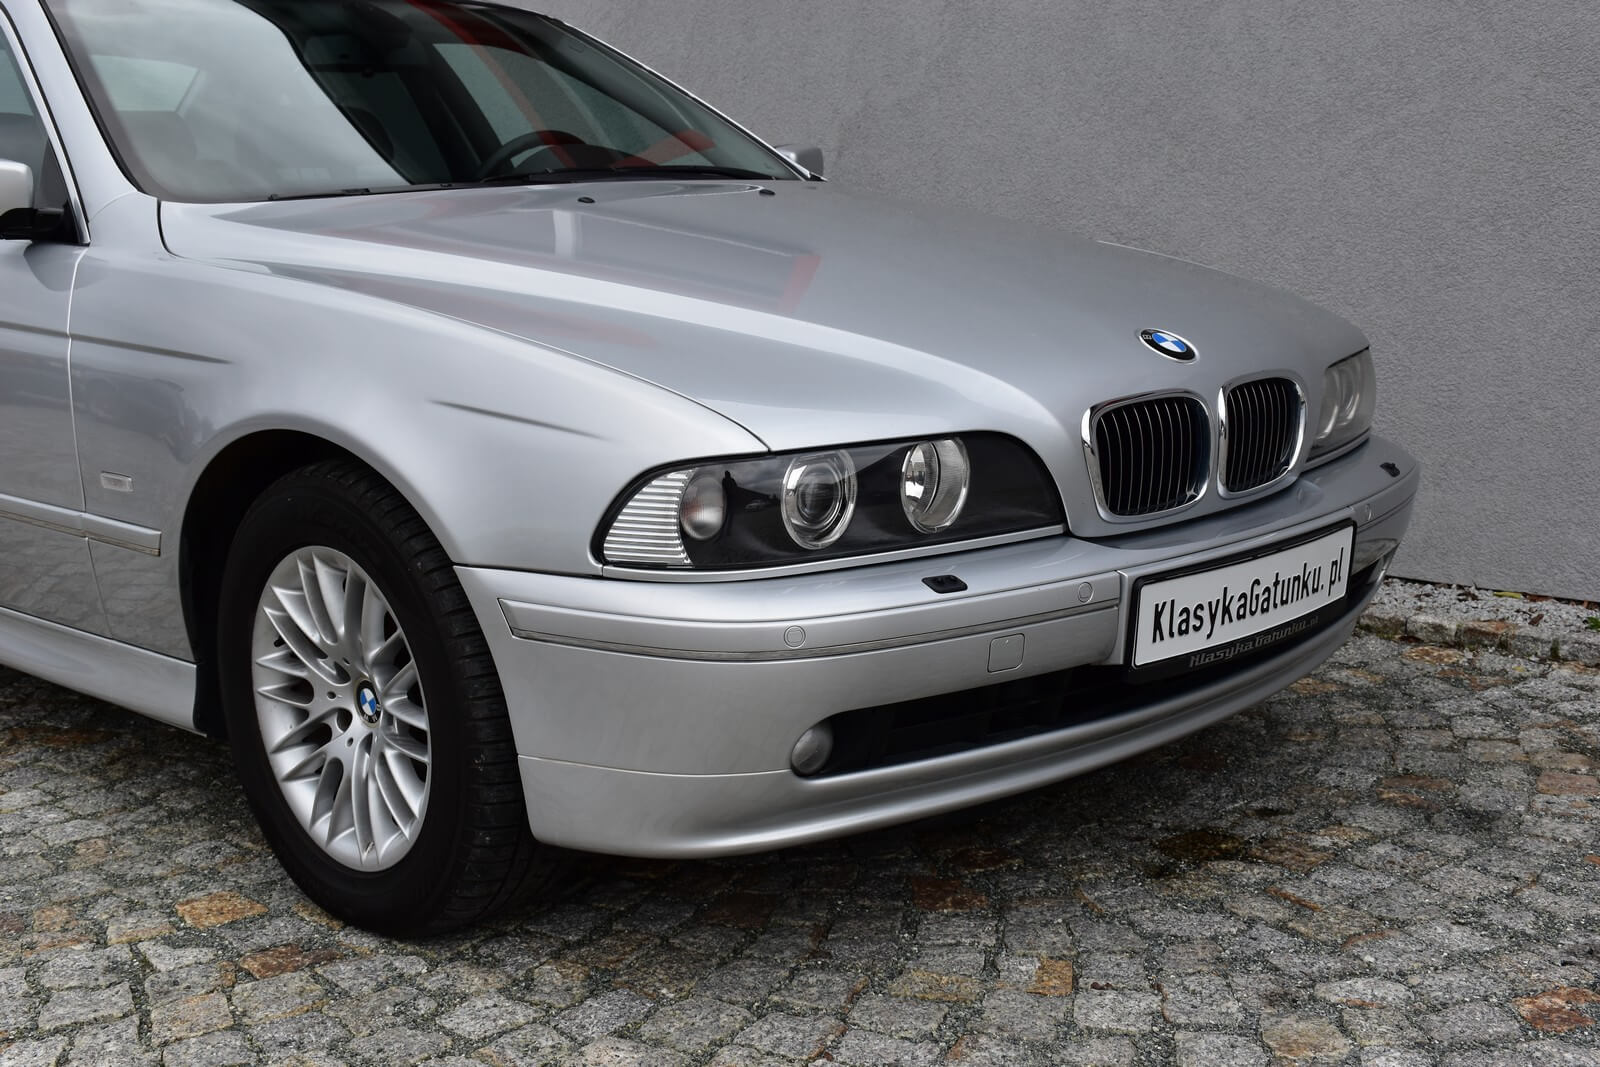 BMW 535i E39 2001 Giełda CzasNaKlasyka.pl